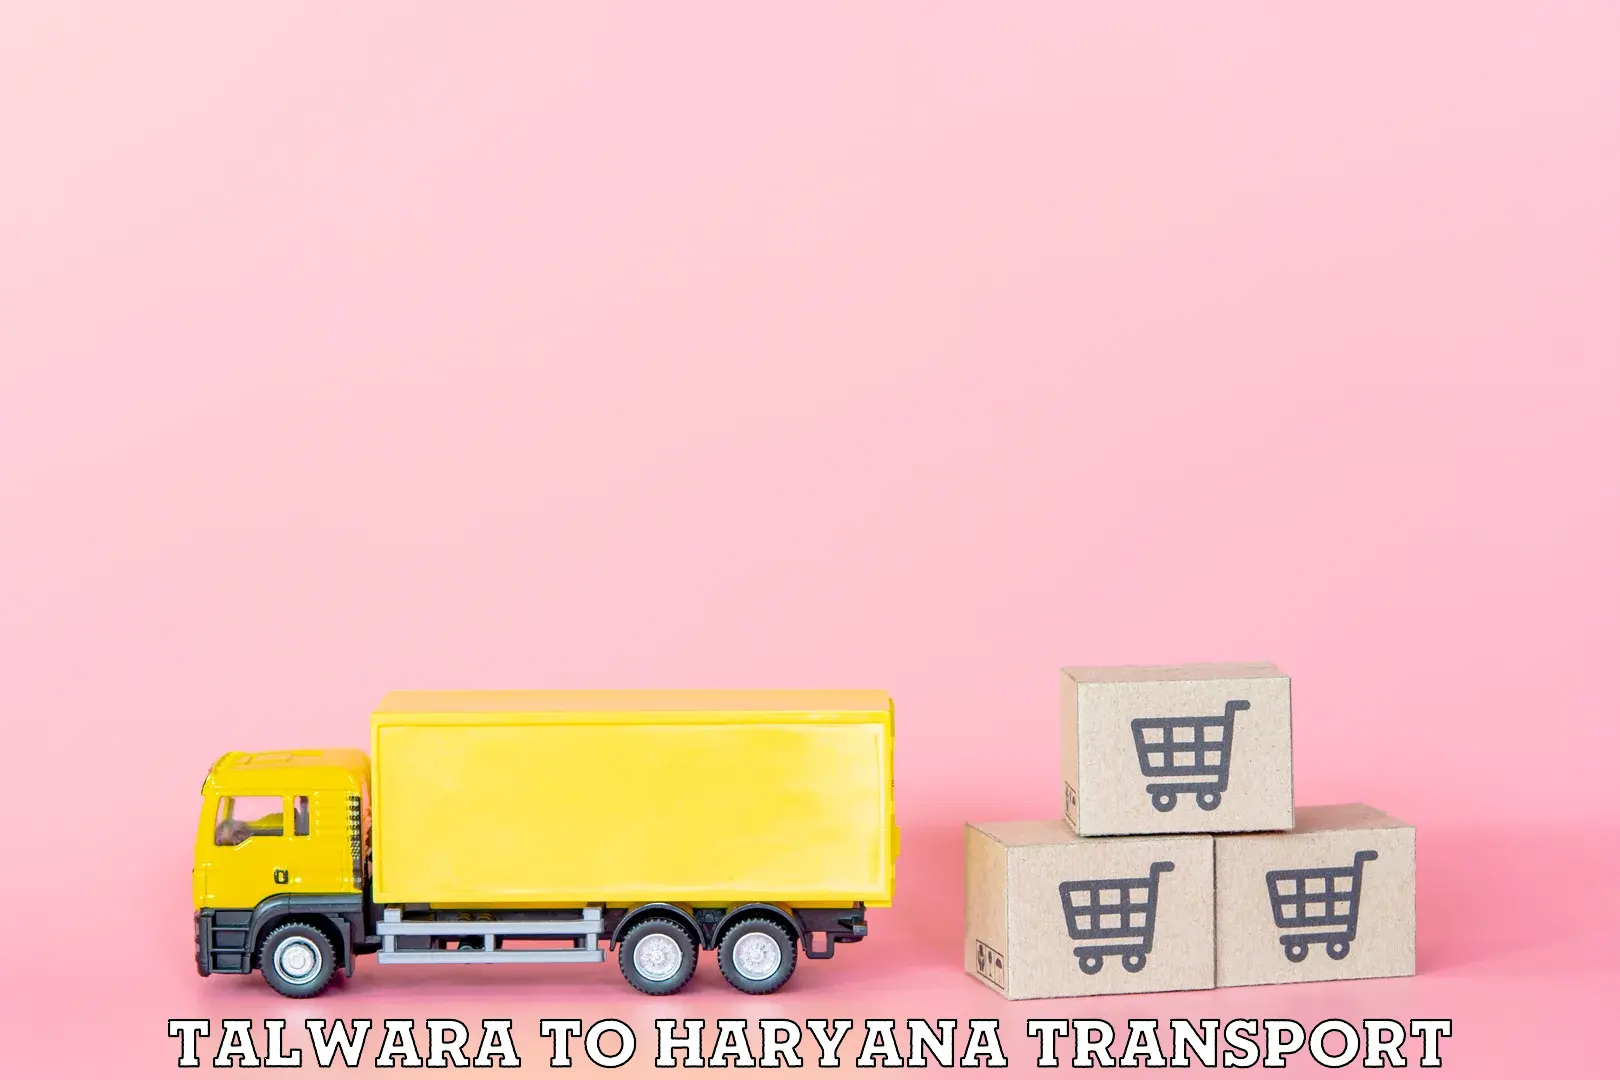 Online transport service Talwara to NCR Haryana